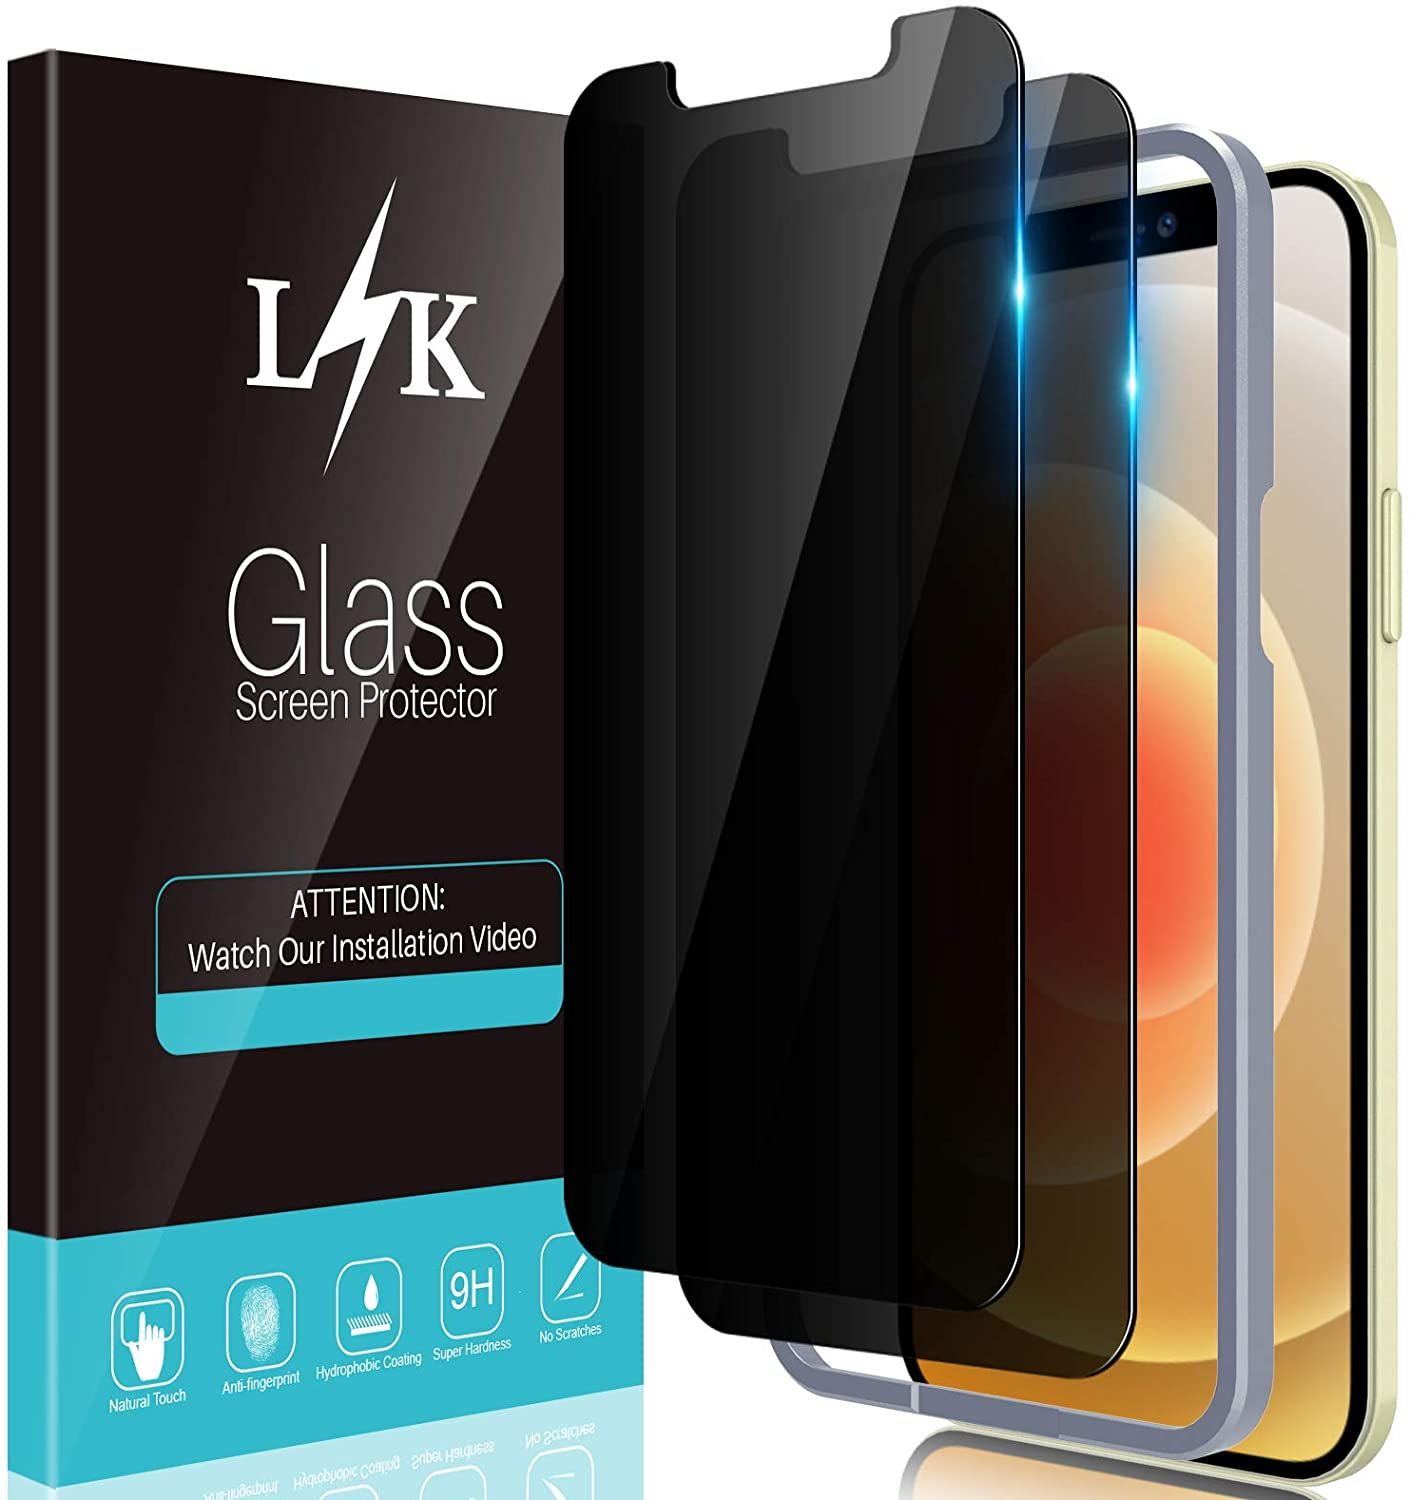 L K branded screen protector packaging.